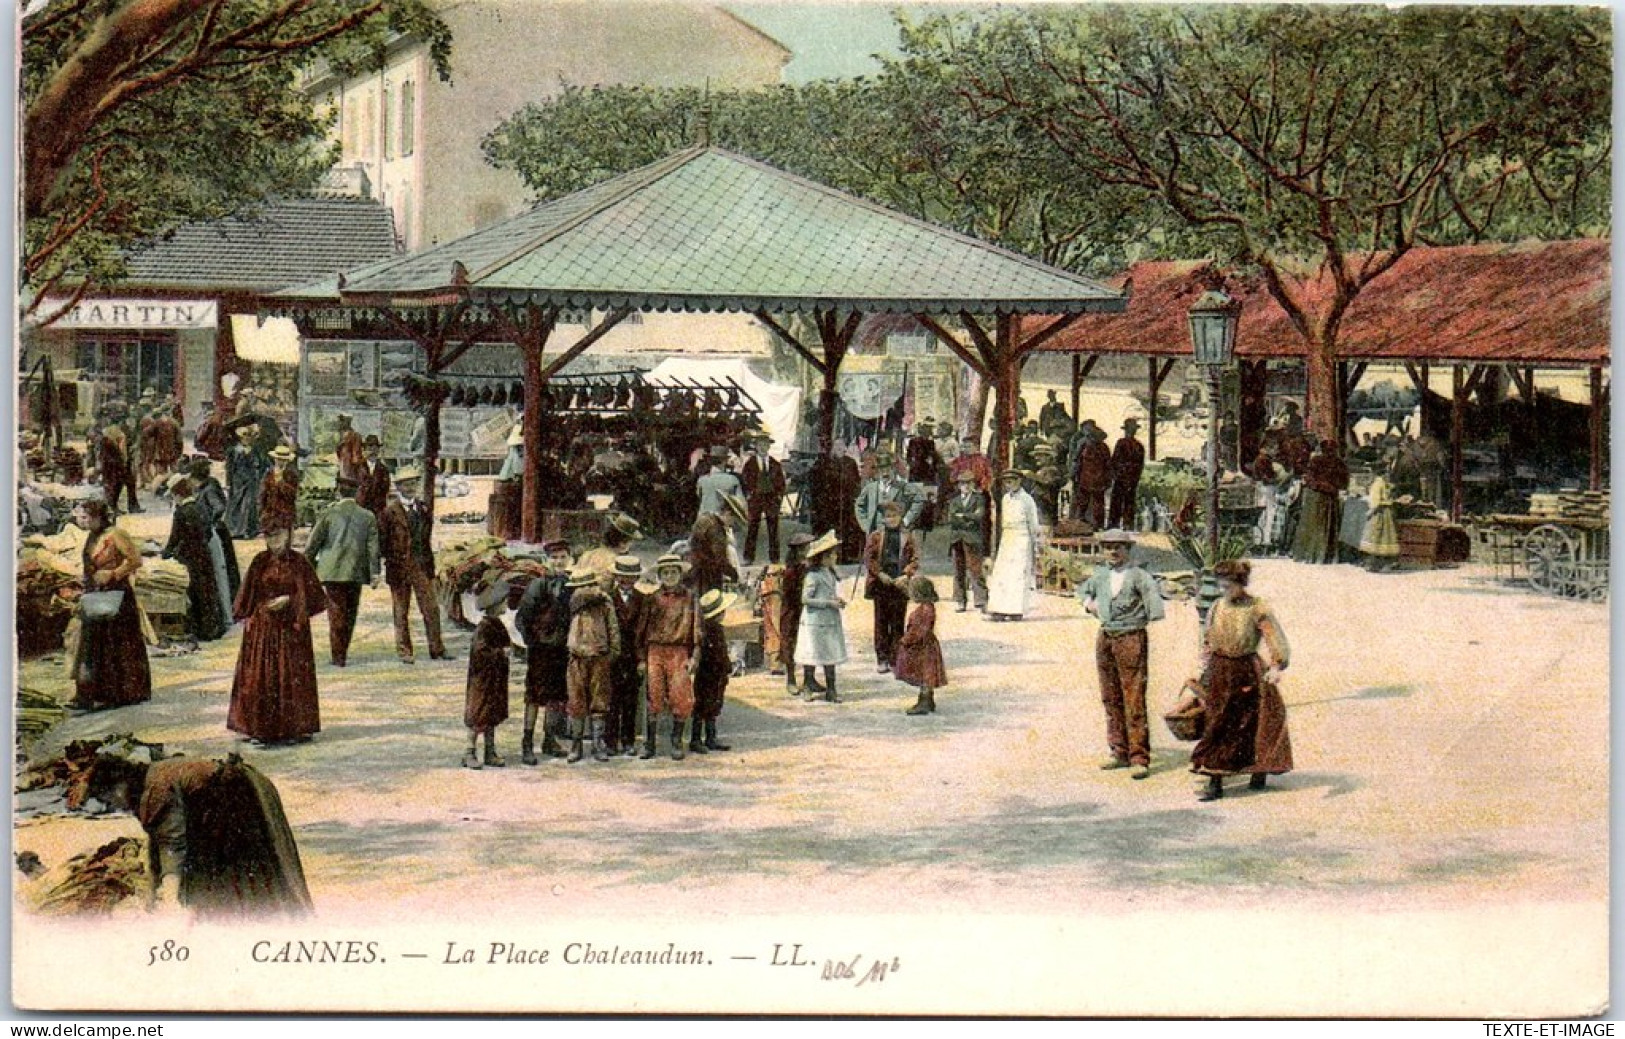 06 CANNES - La Place Chateaudun. - Cannes